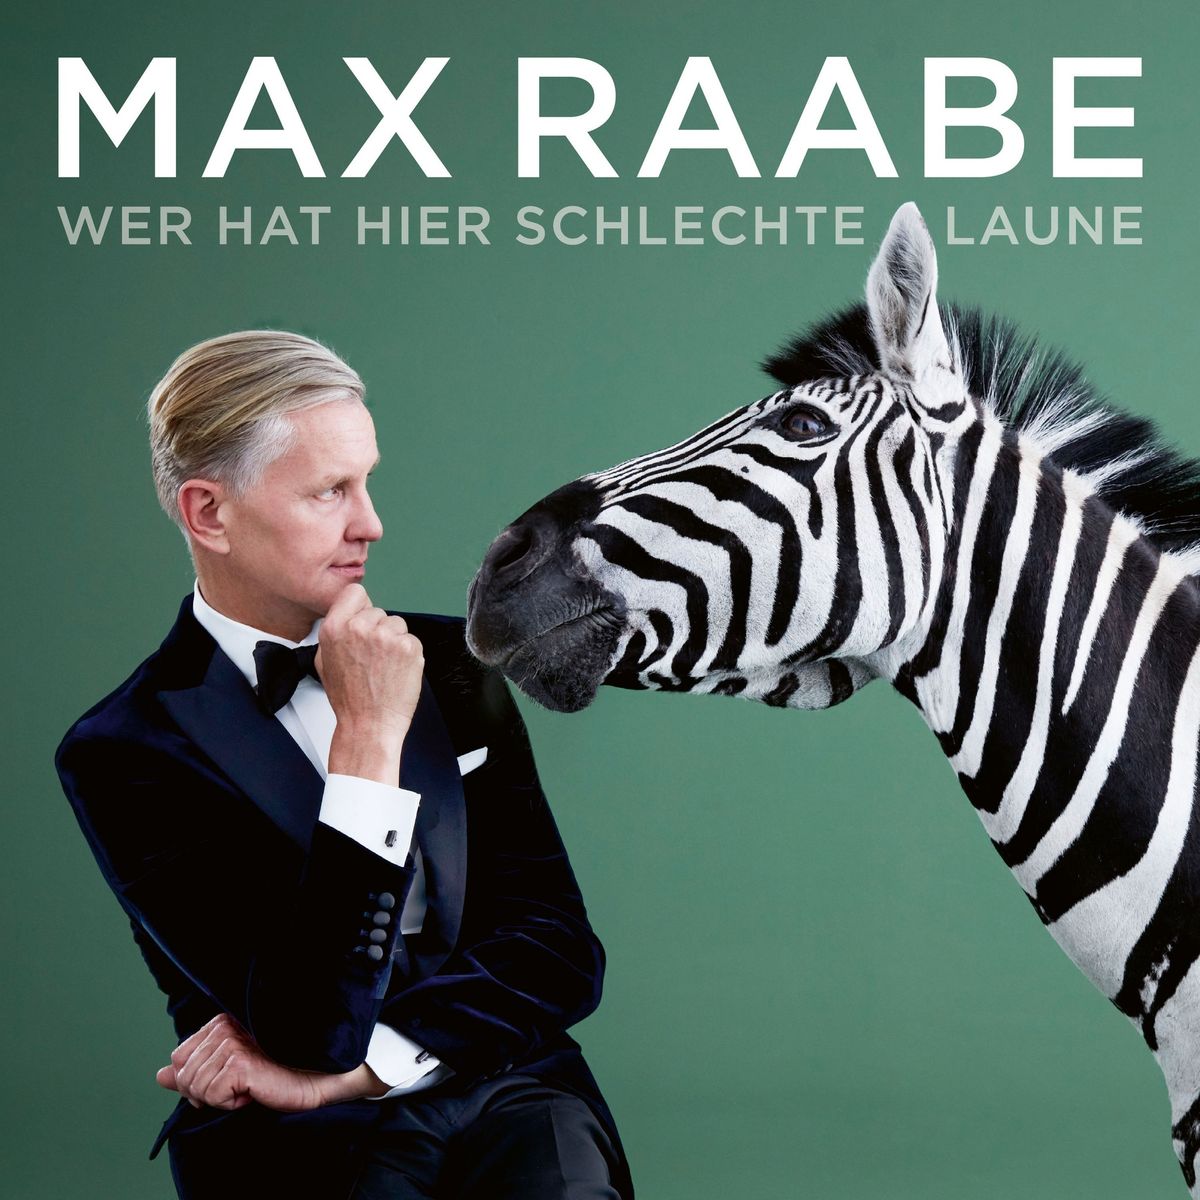 Max Raabe & Palast Orchester "Wer hat hier schlechte Laune" \/ Augsburg